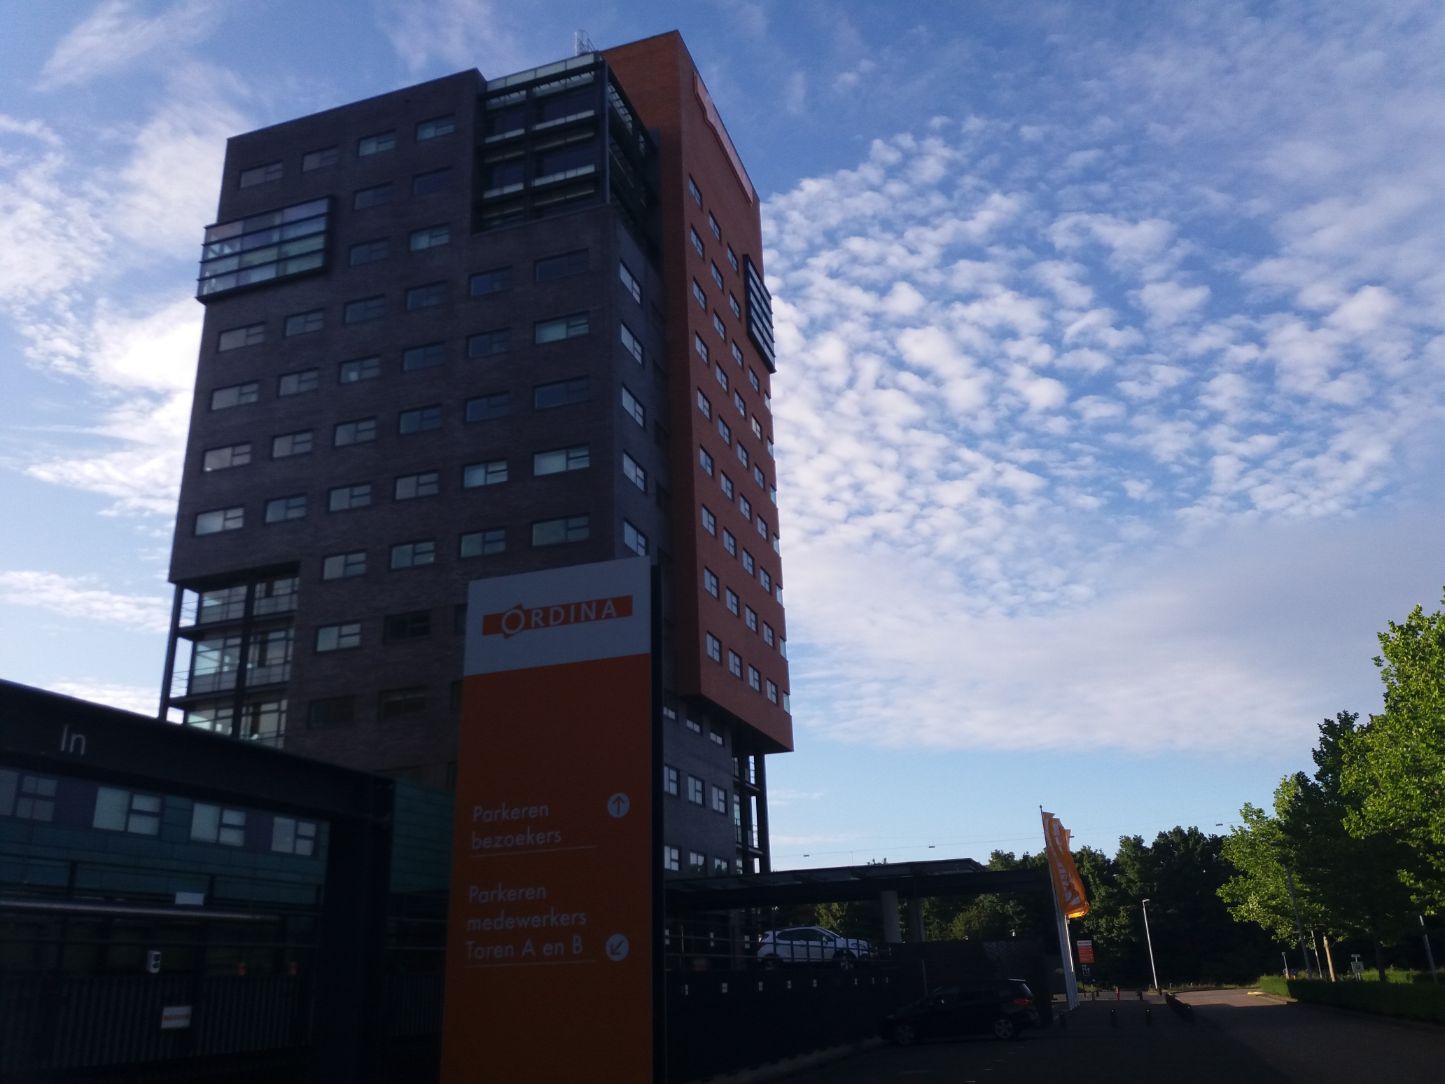 Ordina-hoofdkantoor UtrechtNieuwegein